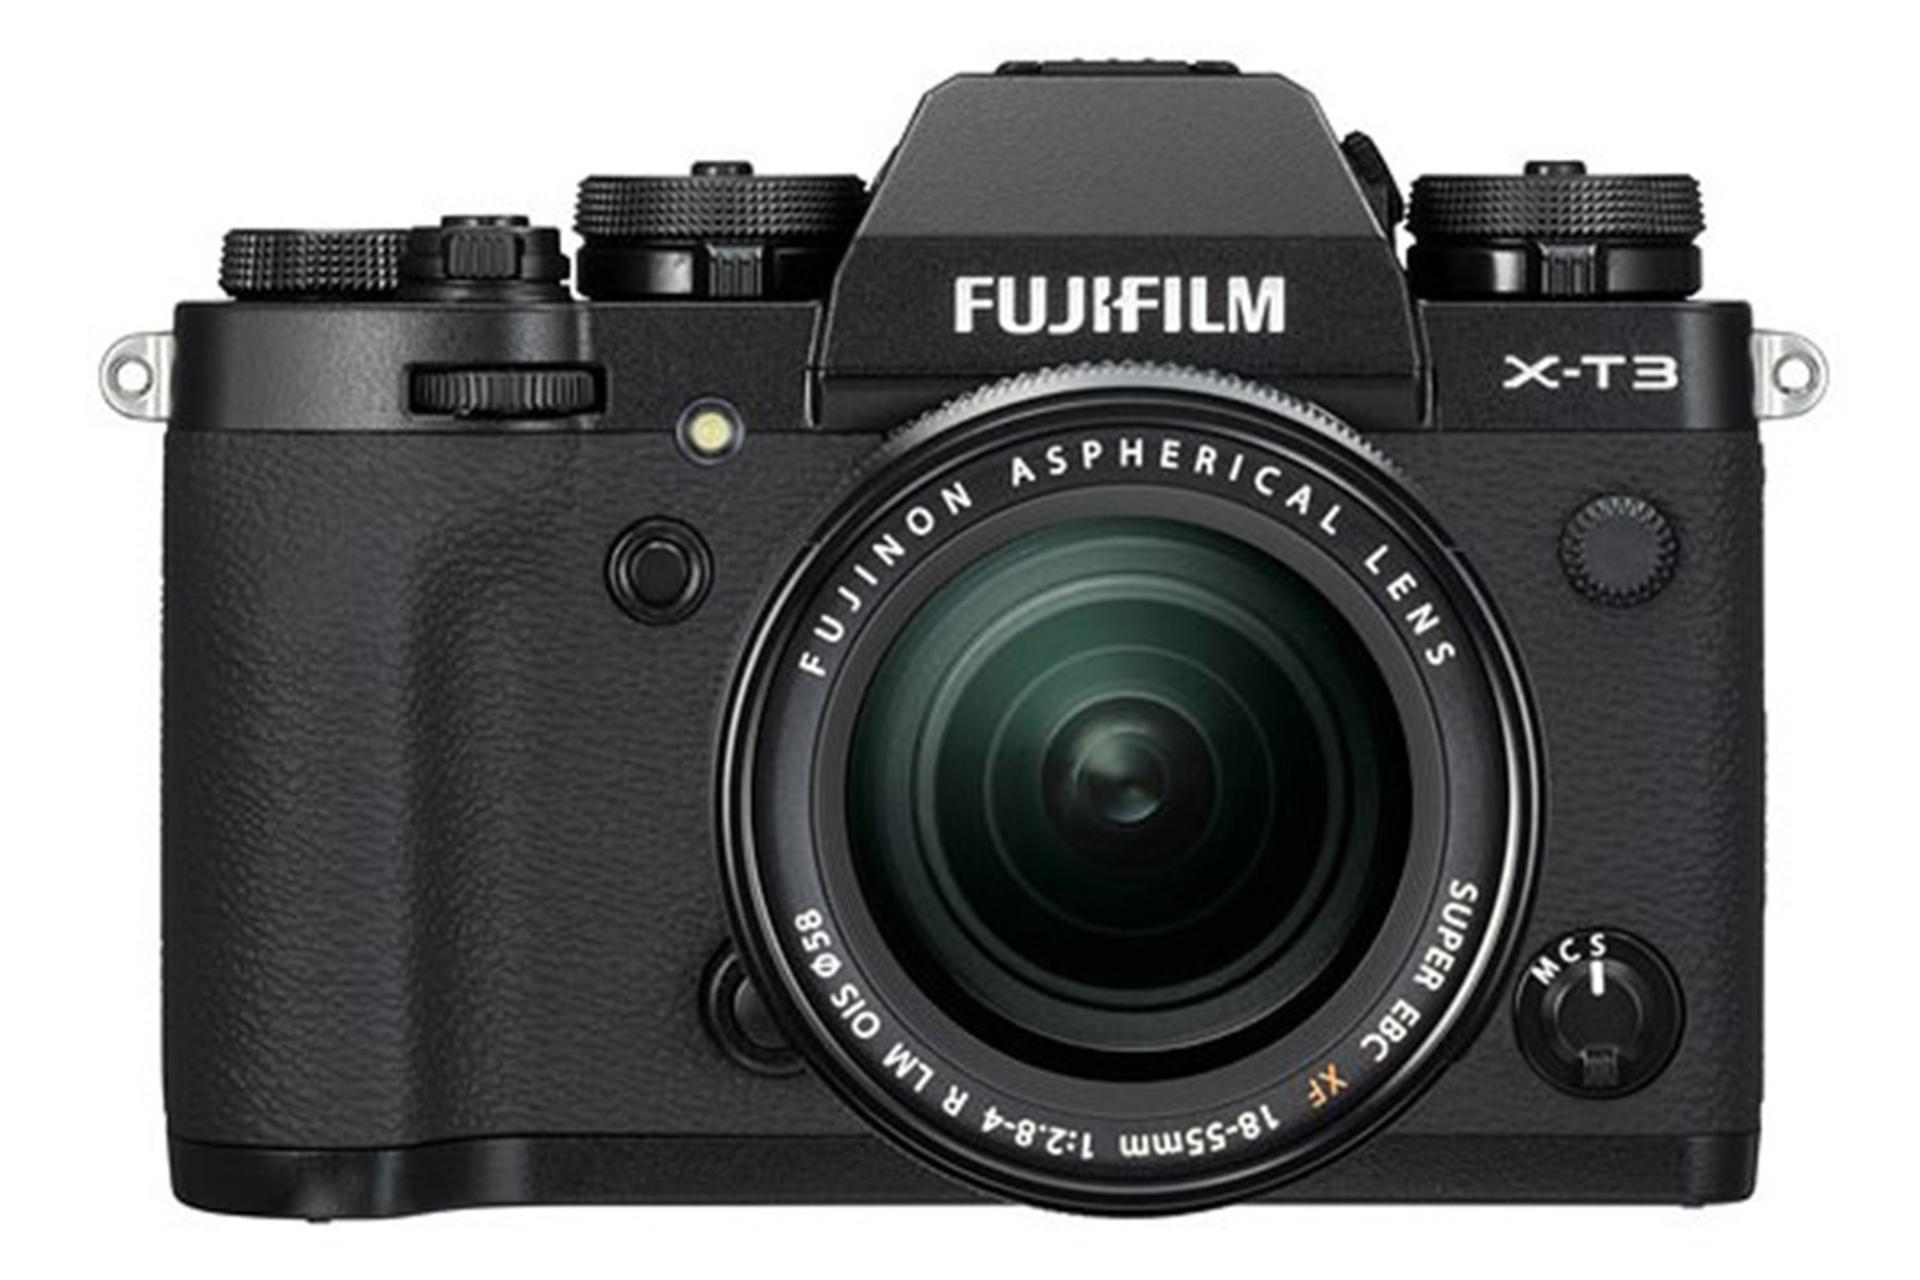 مرجع متخصصين ايران Fujifilm X-T3 / فوجي فيلم